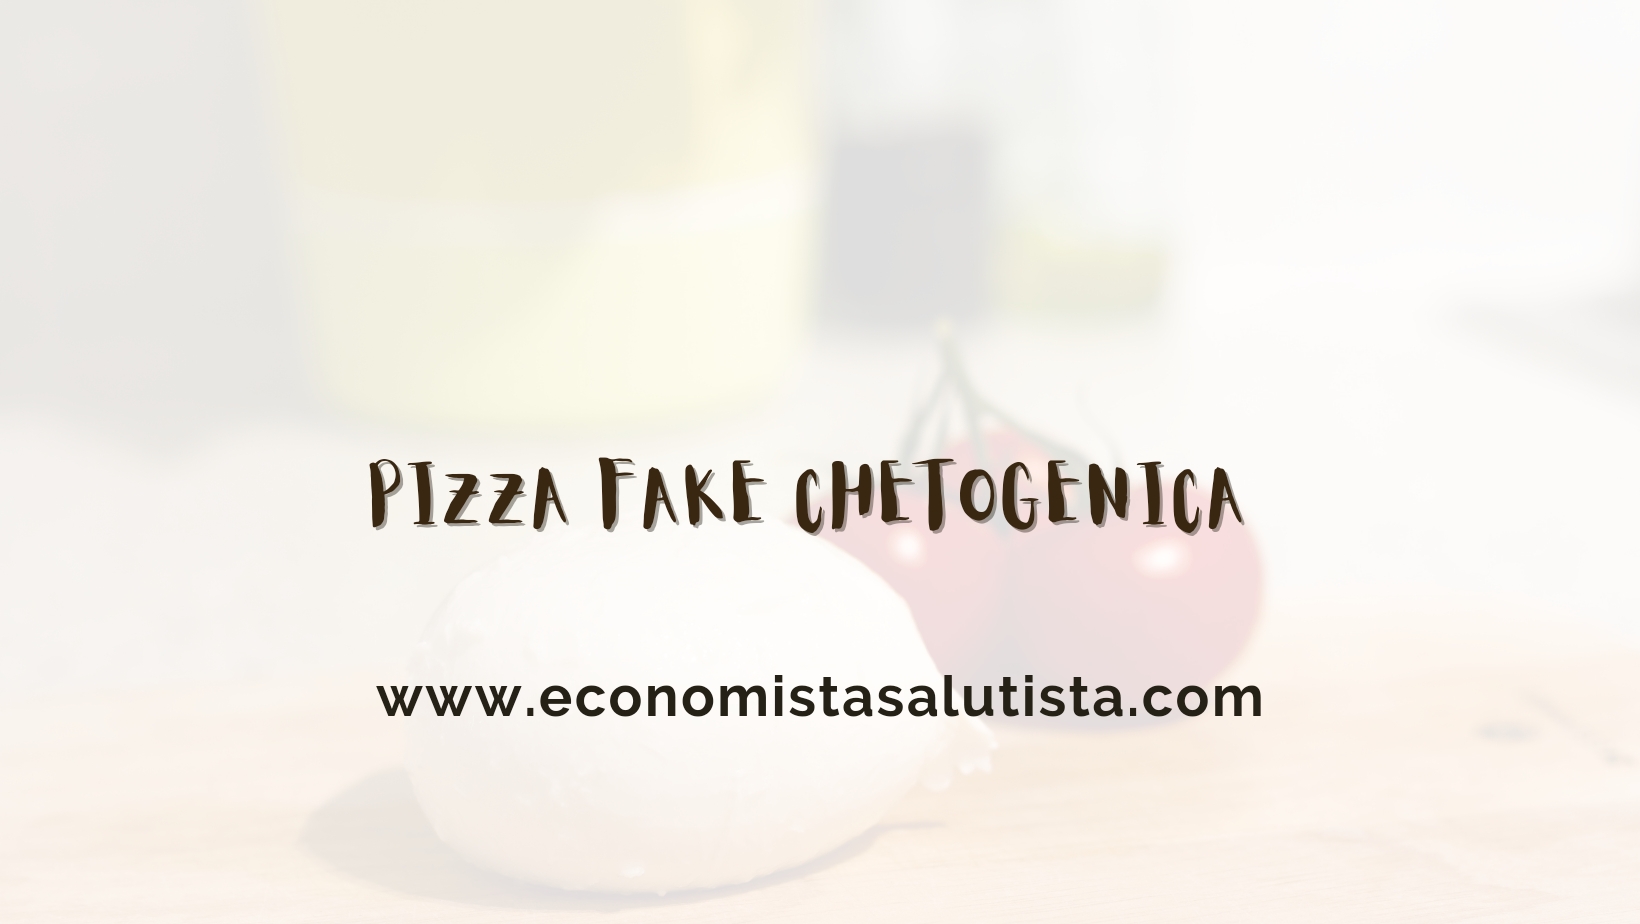 Pizza - Non Pizza - Chetogenica